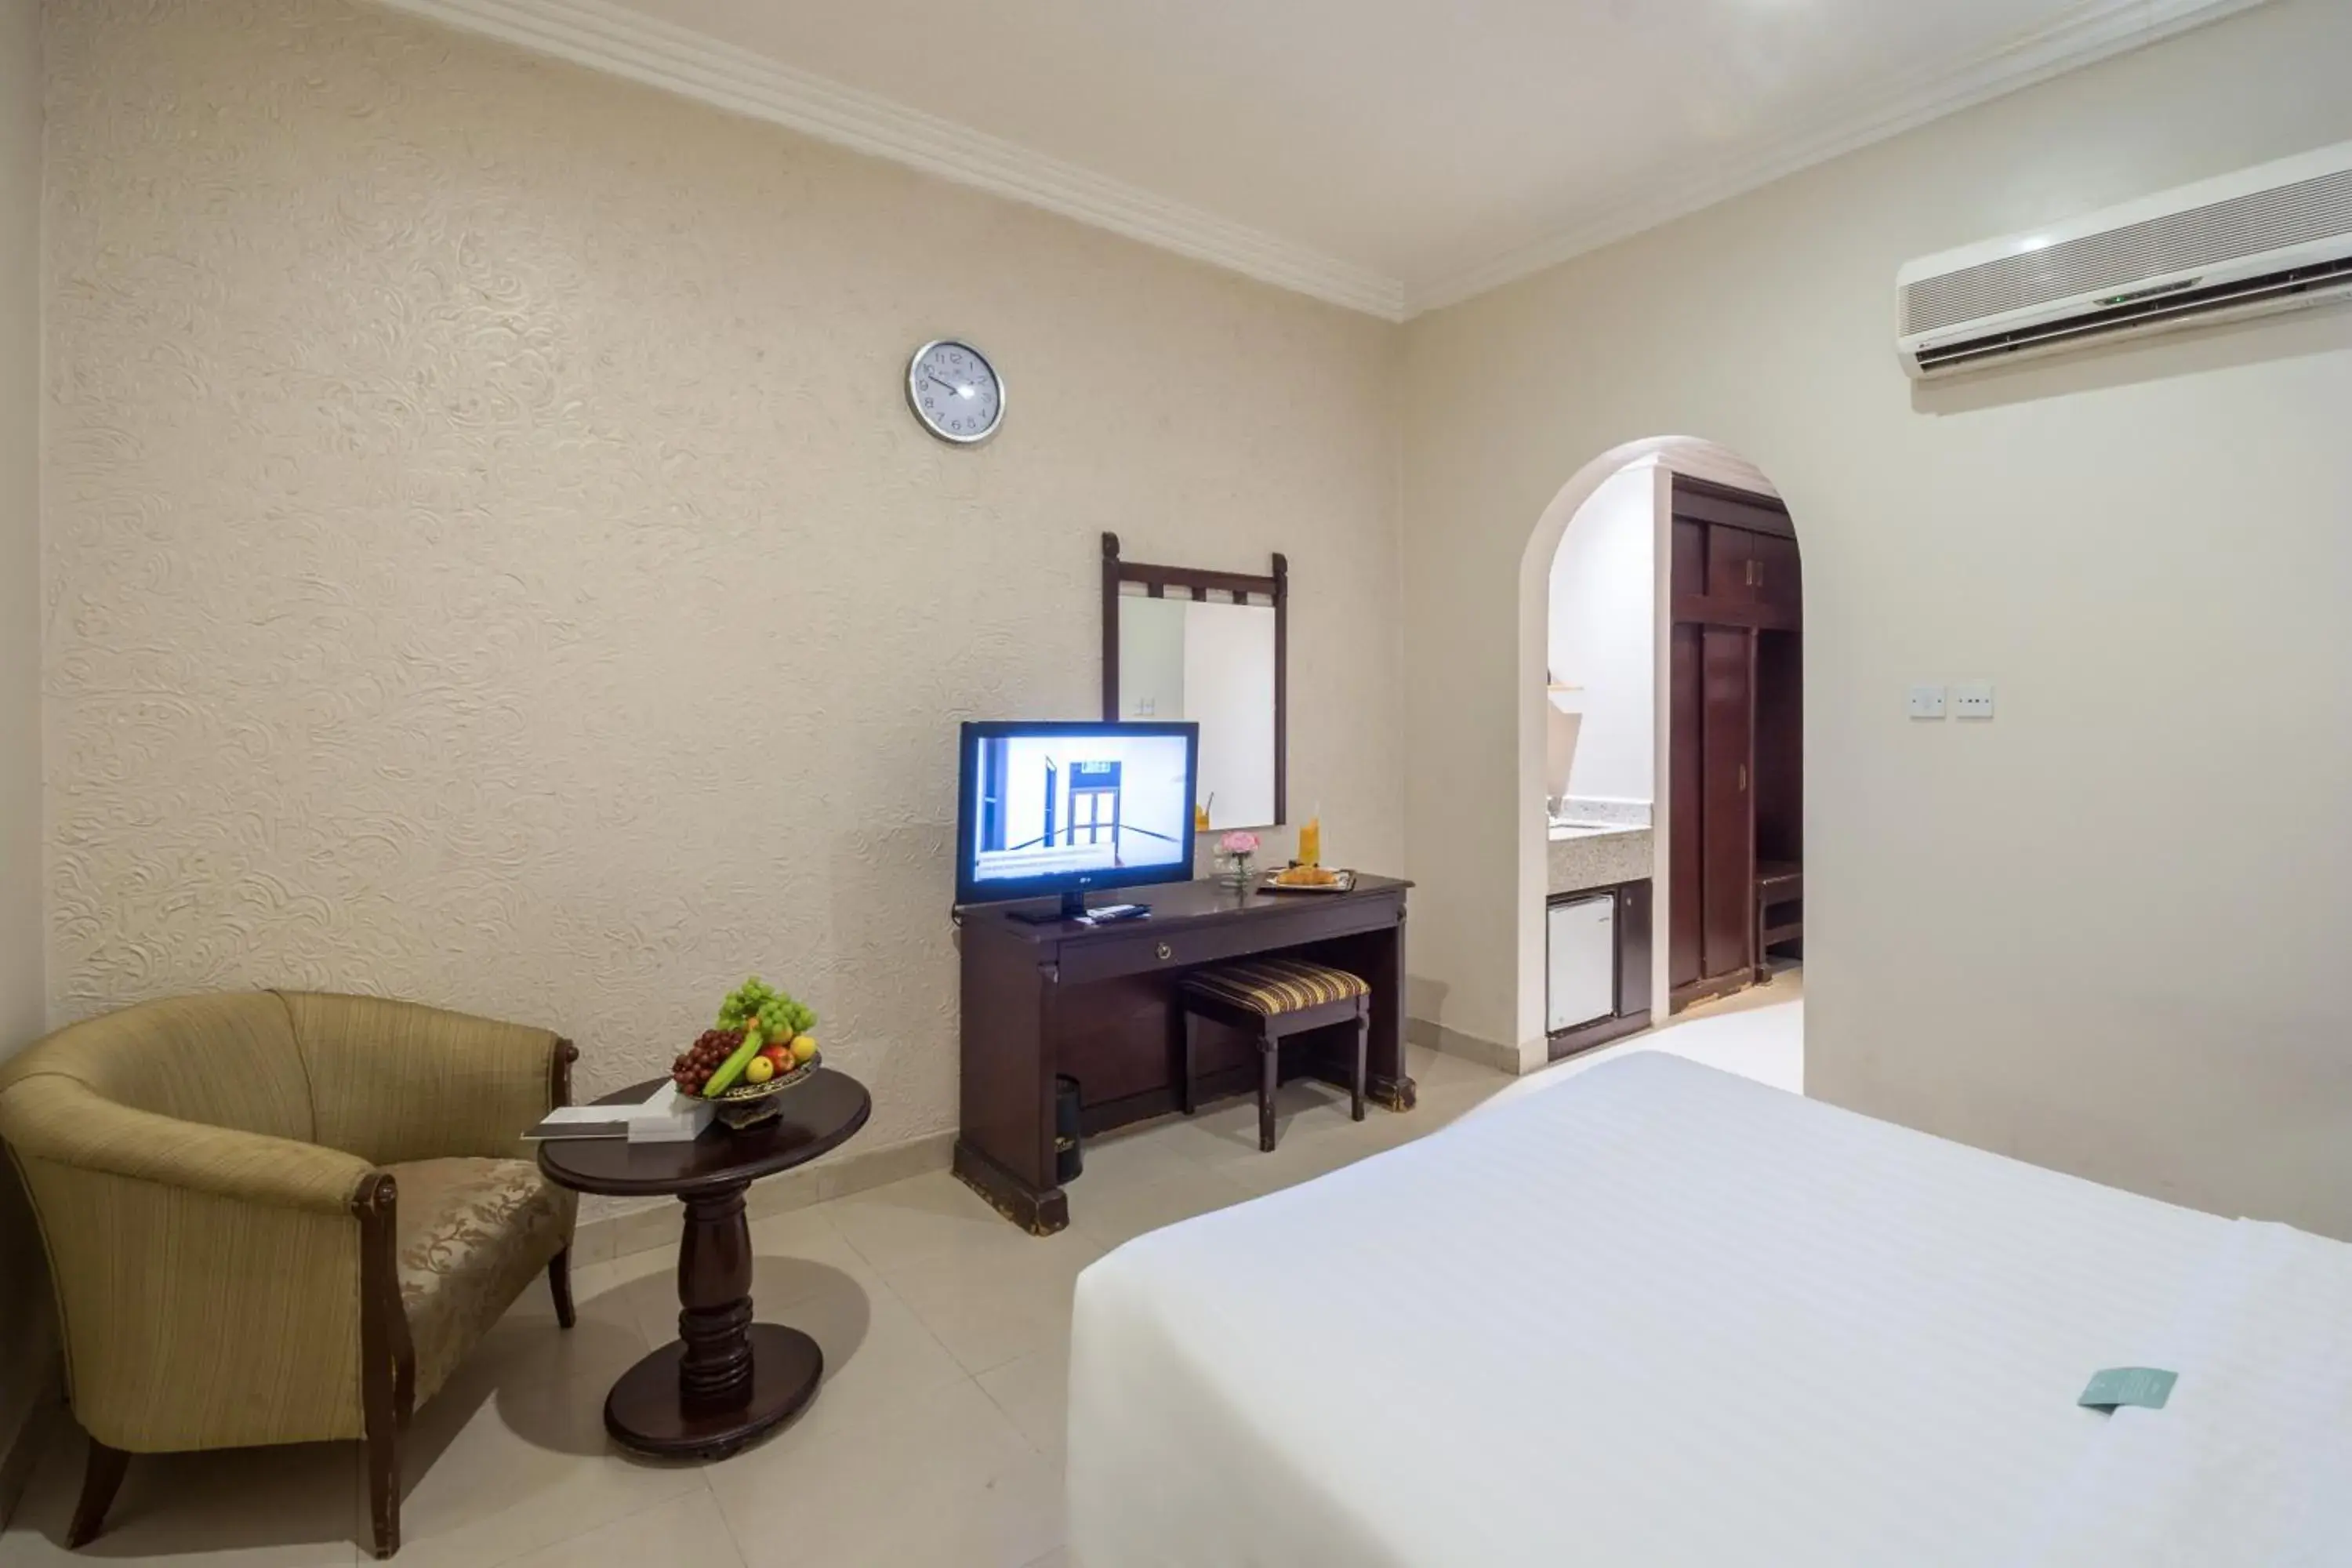 Bedroom, TV/Entertainment Center in Boudl Al Fayhaa